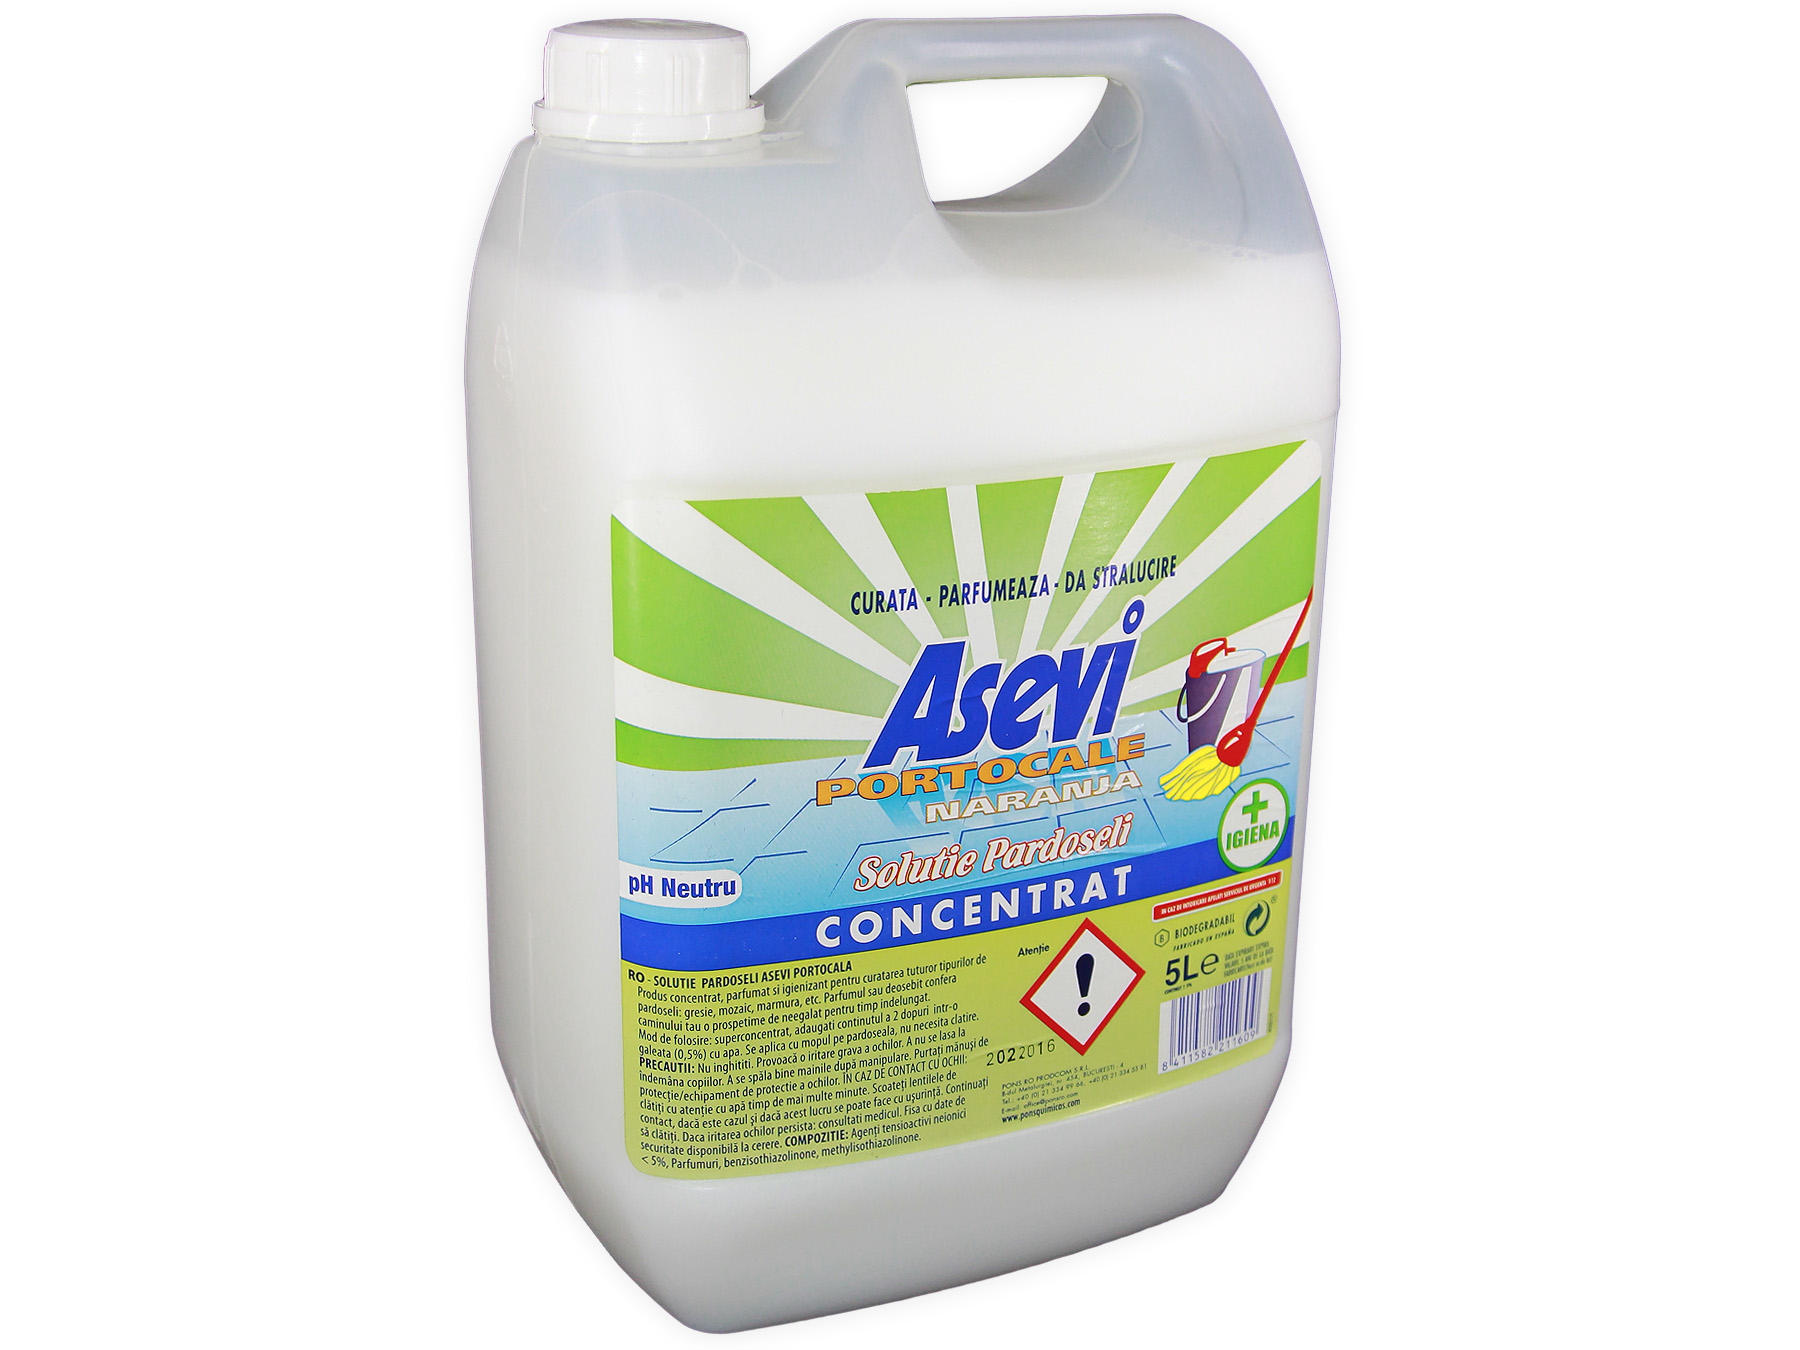 Detergent universal concentrat Manual pentru pardoseli cu parfum de portocala 5L-Asevi Asevi imagine 2022 depozituldepapetarie.ro